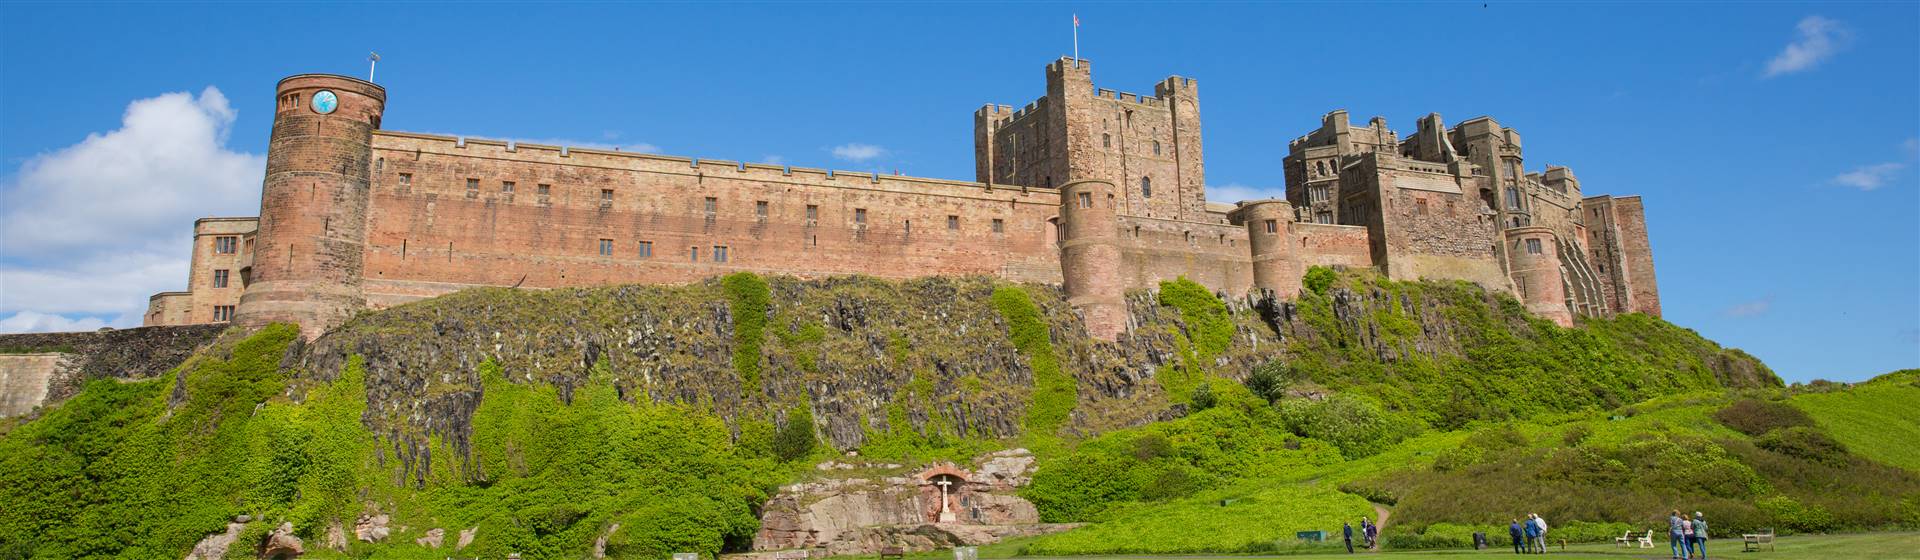 <img src="bamburgh_castle2©shutterstock.jpeg" alt="Bamburgh Castle"/>